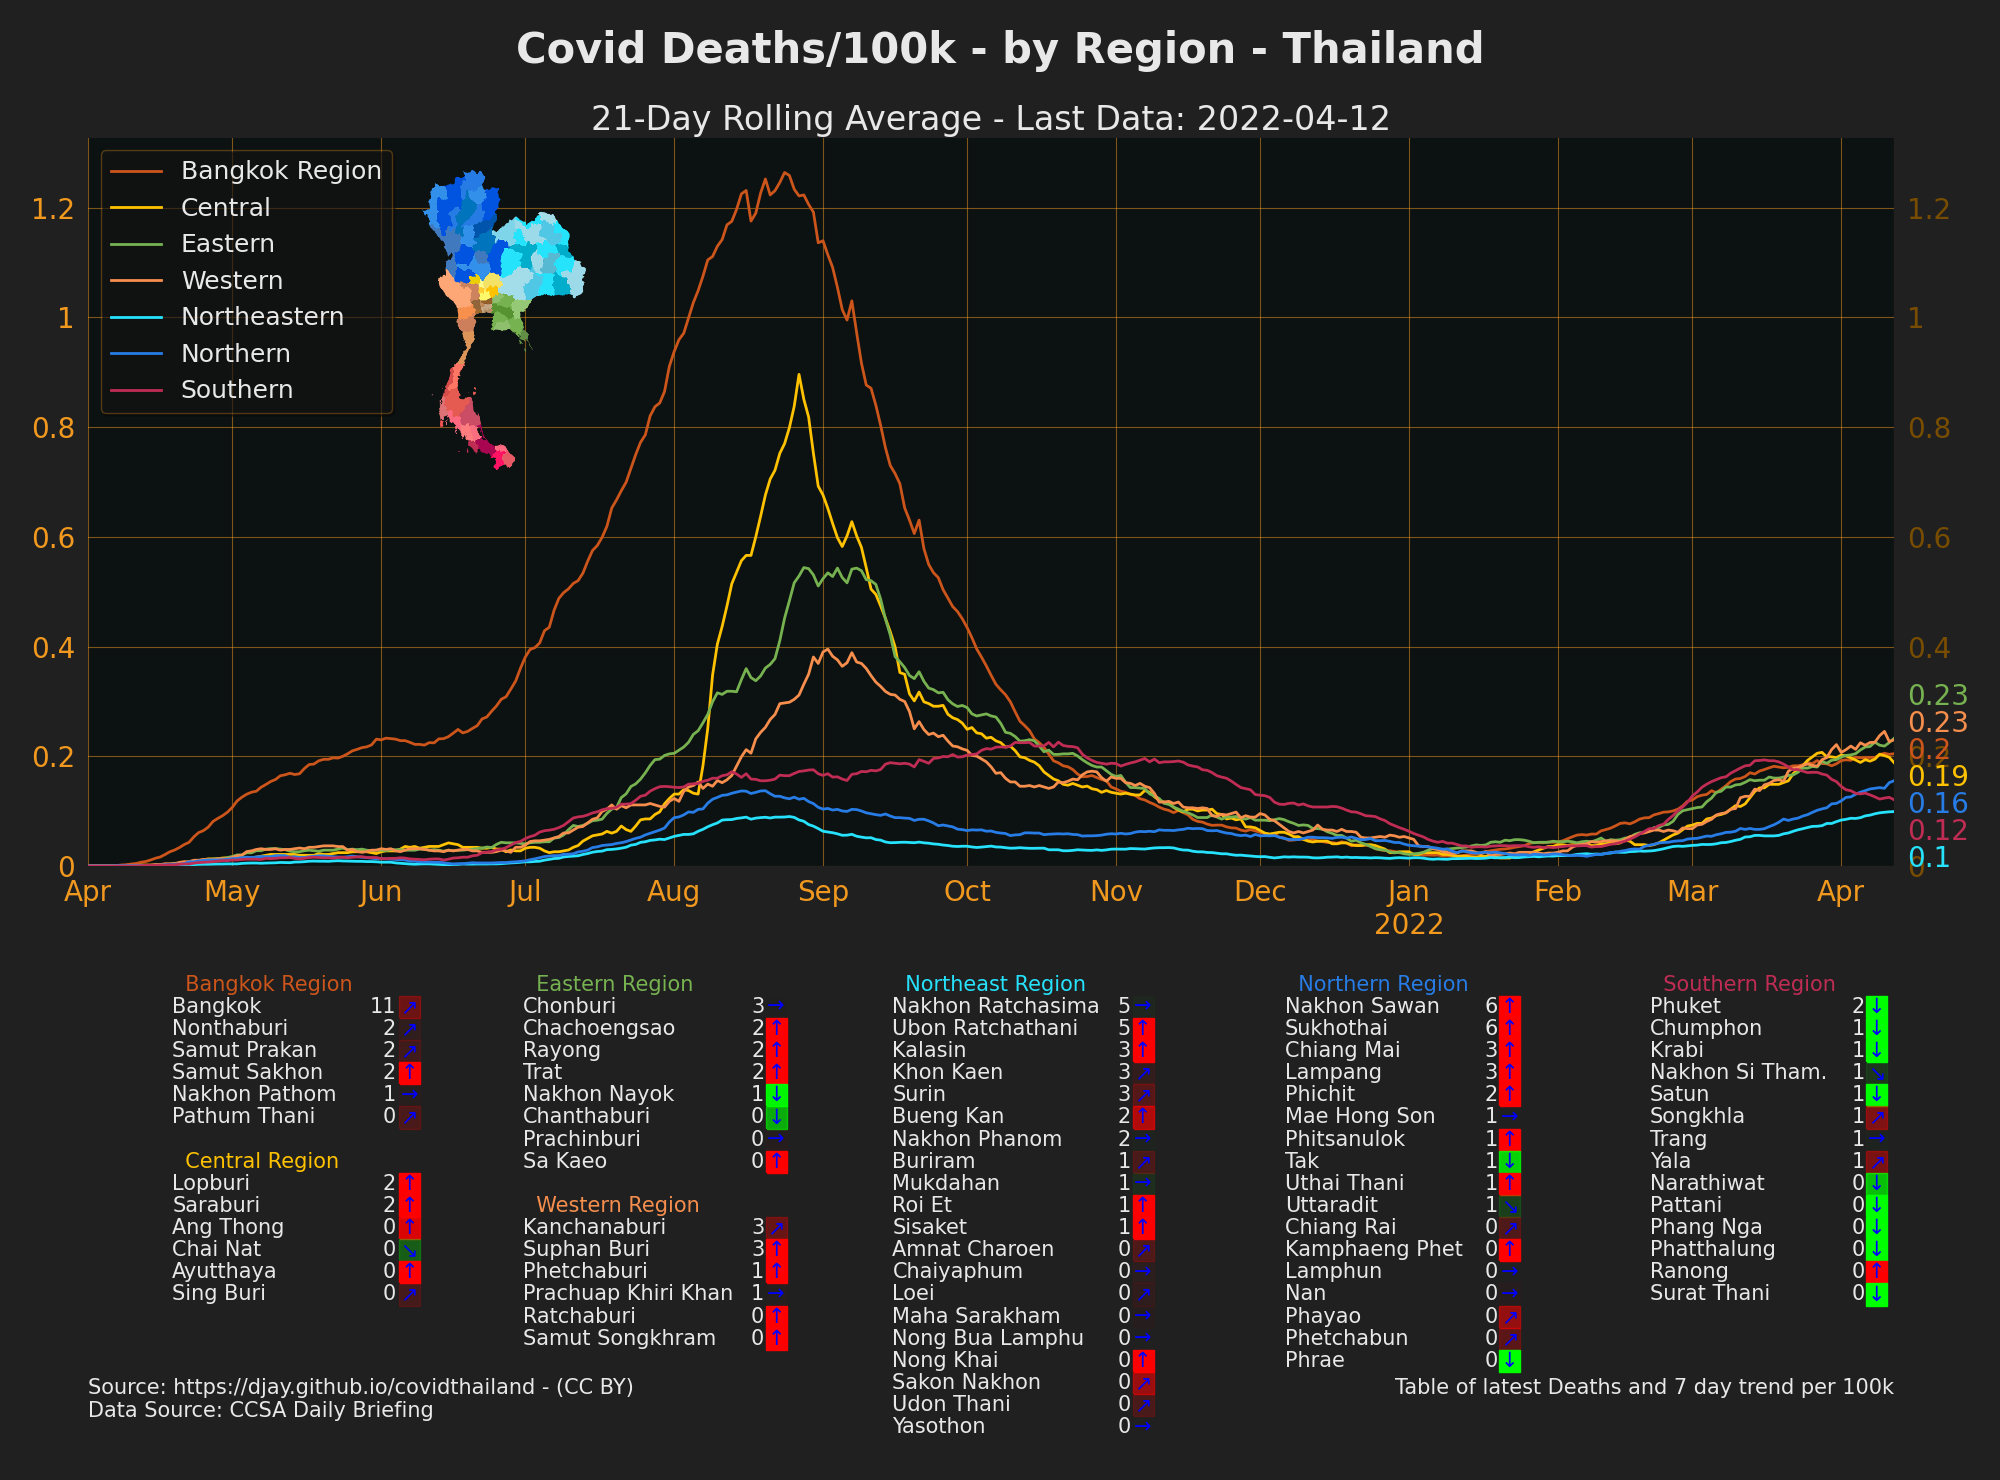 Thailand Covid Deaths by Region